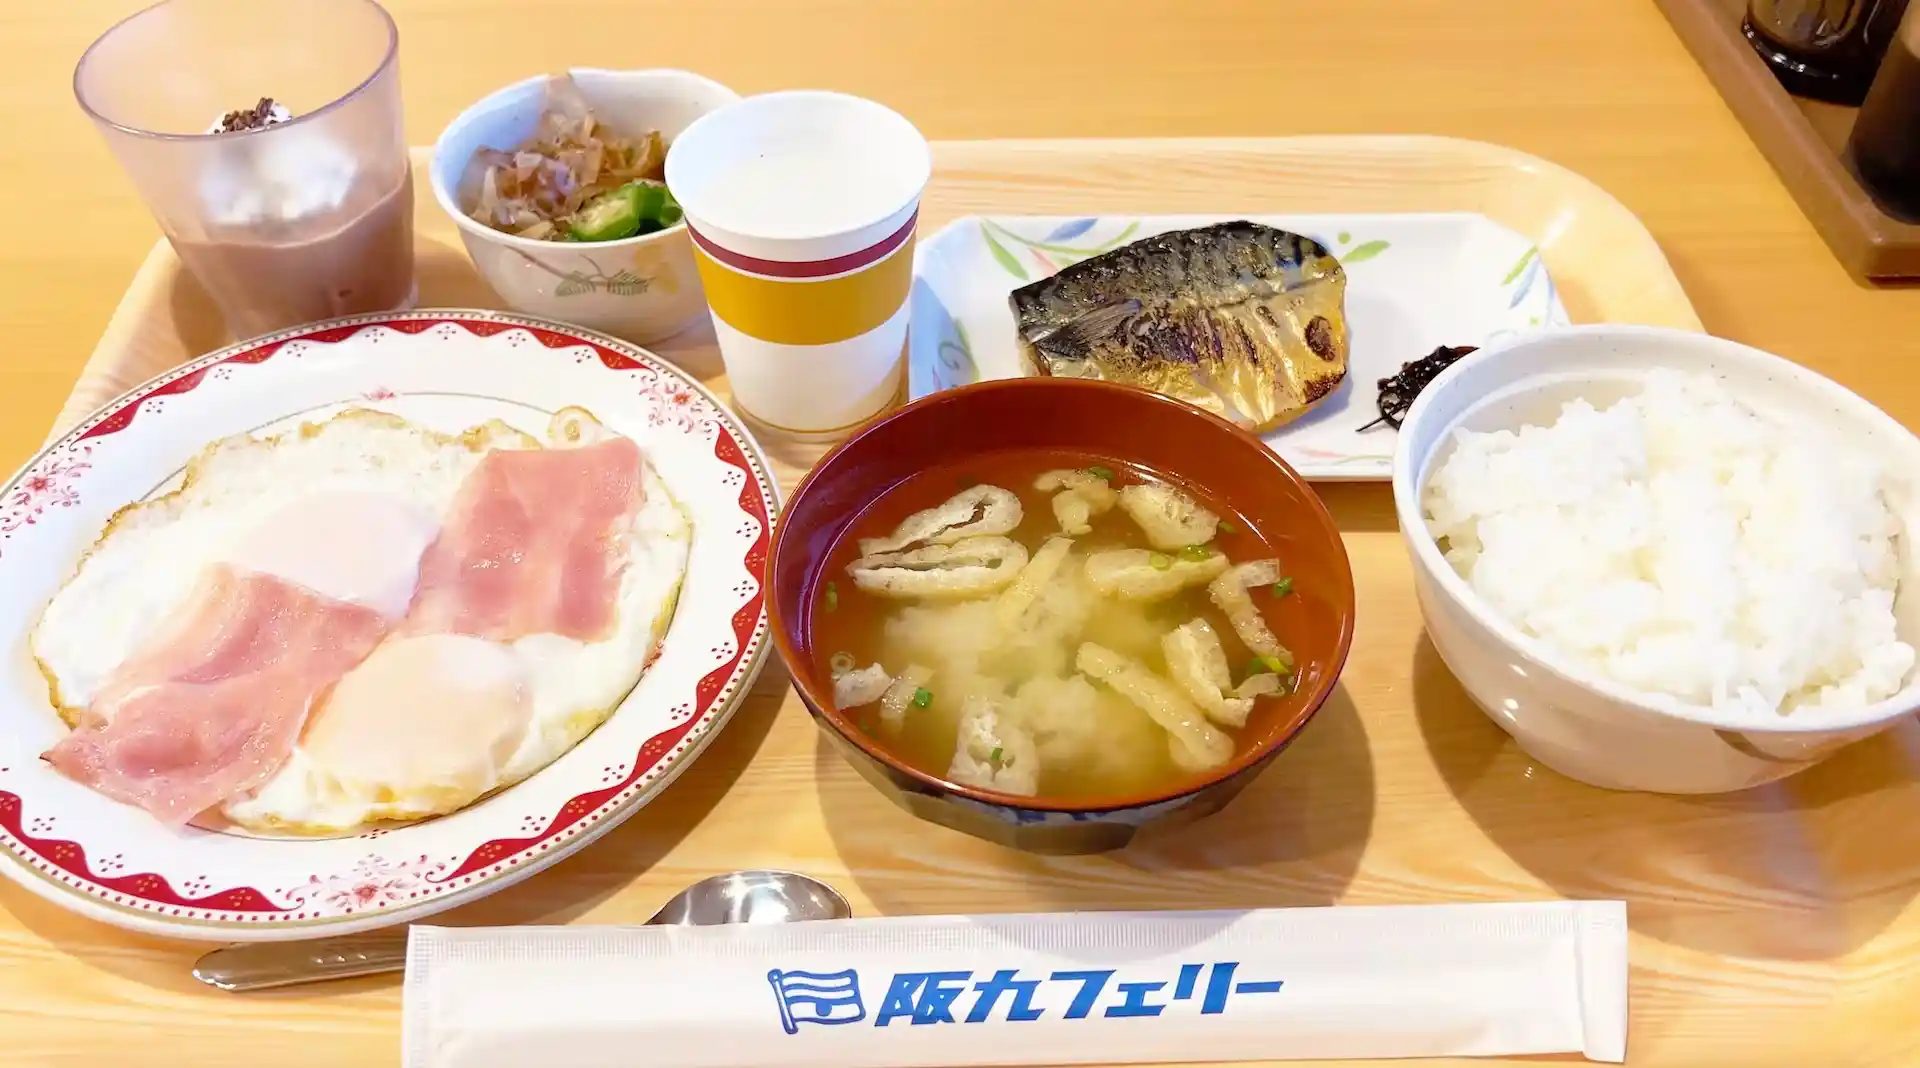 阪九渡輪摂津號船上餐廳的早餐菜單